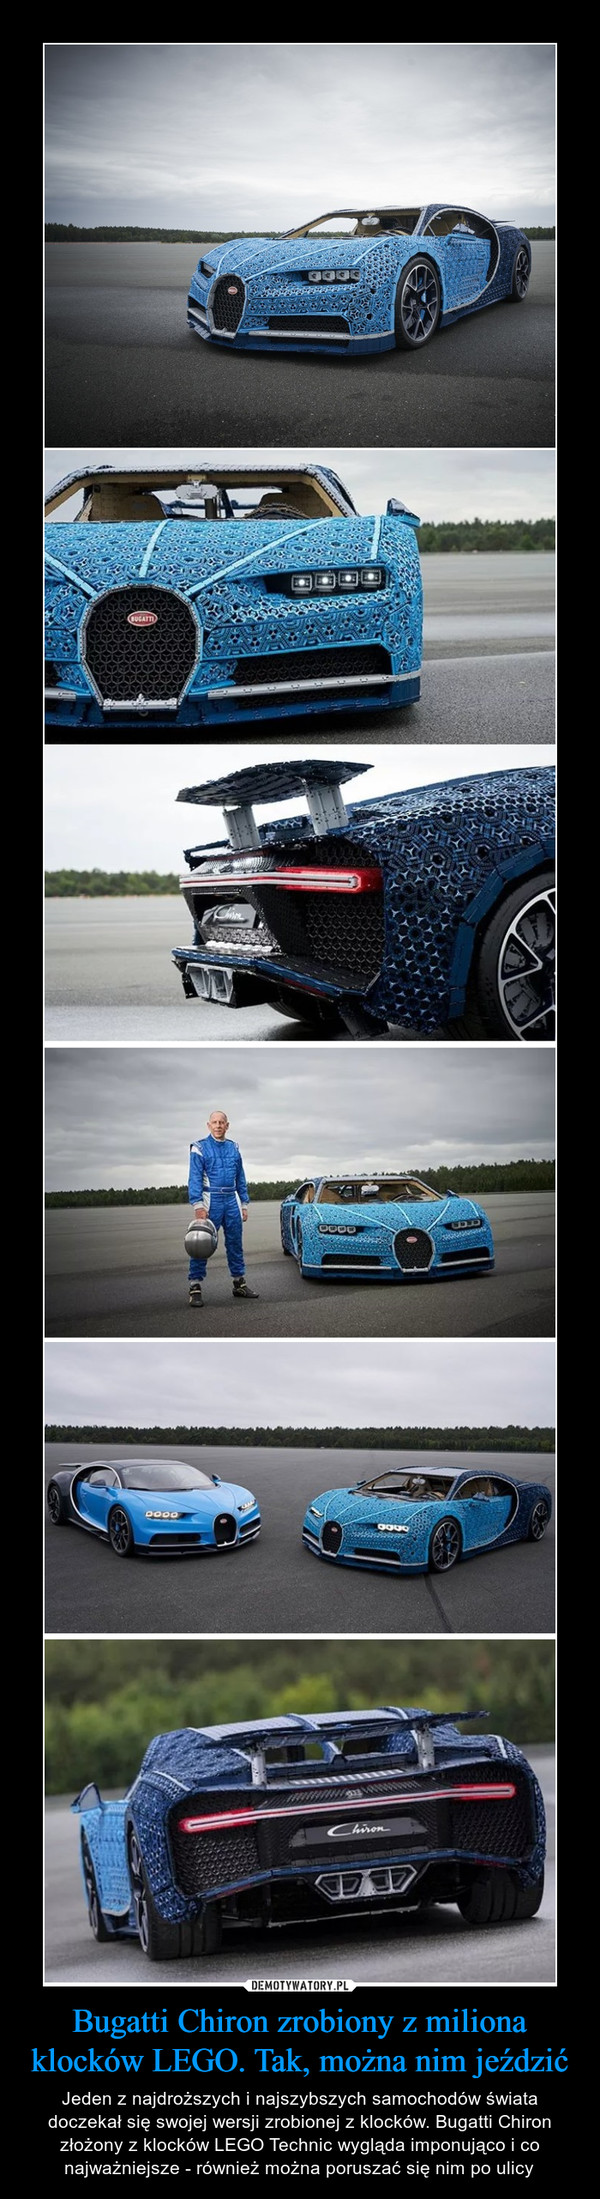 Bugatti Chiron zrobiony z miliona klocków LEGO. Tak, można nim jeździć